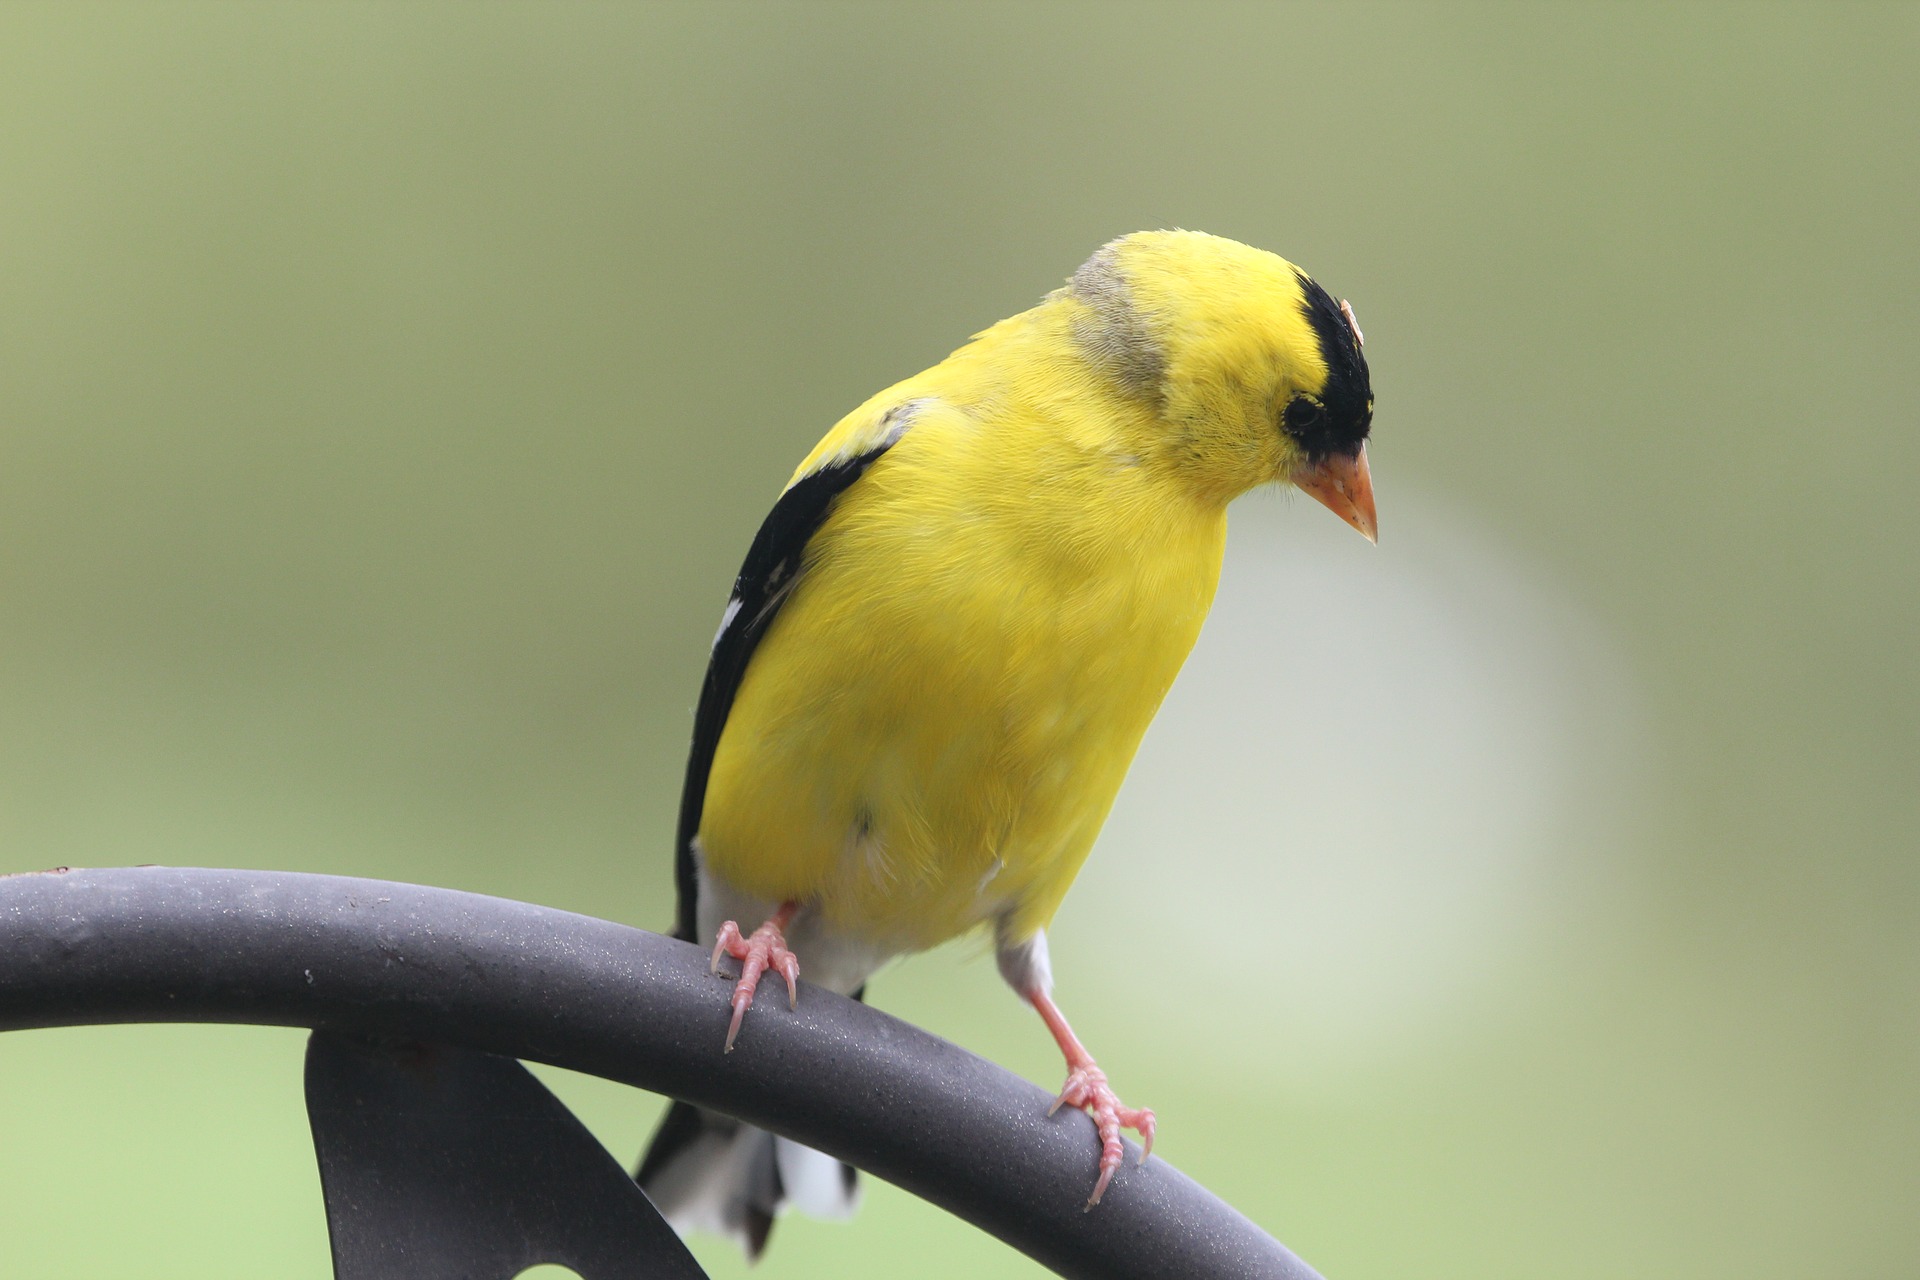 Showy Goldfinch on feeder.